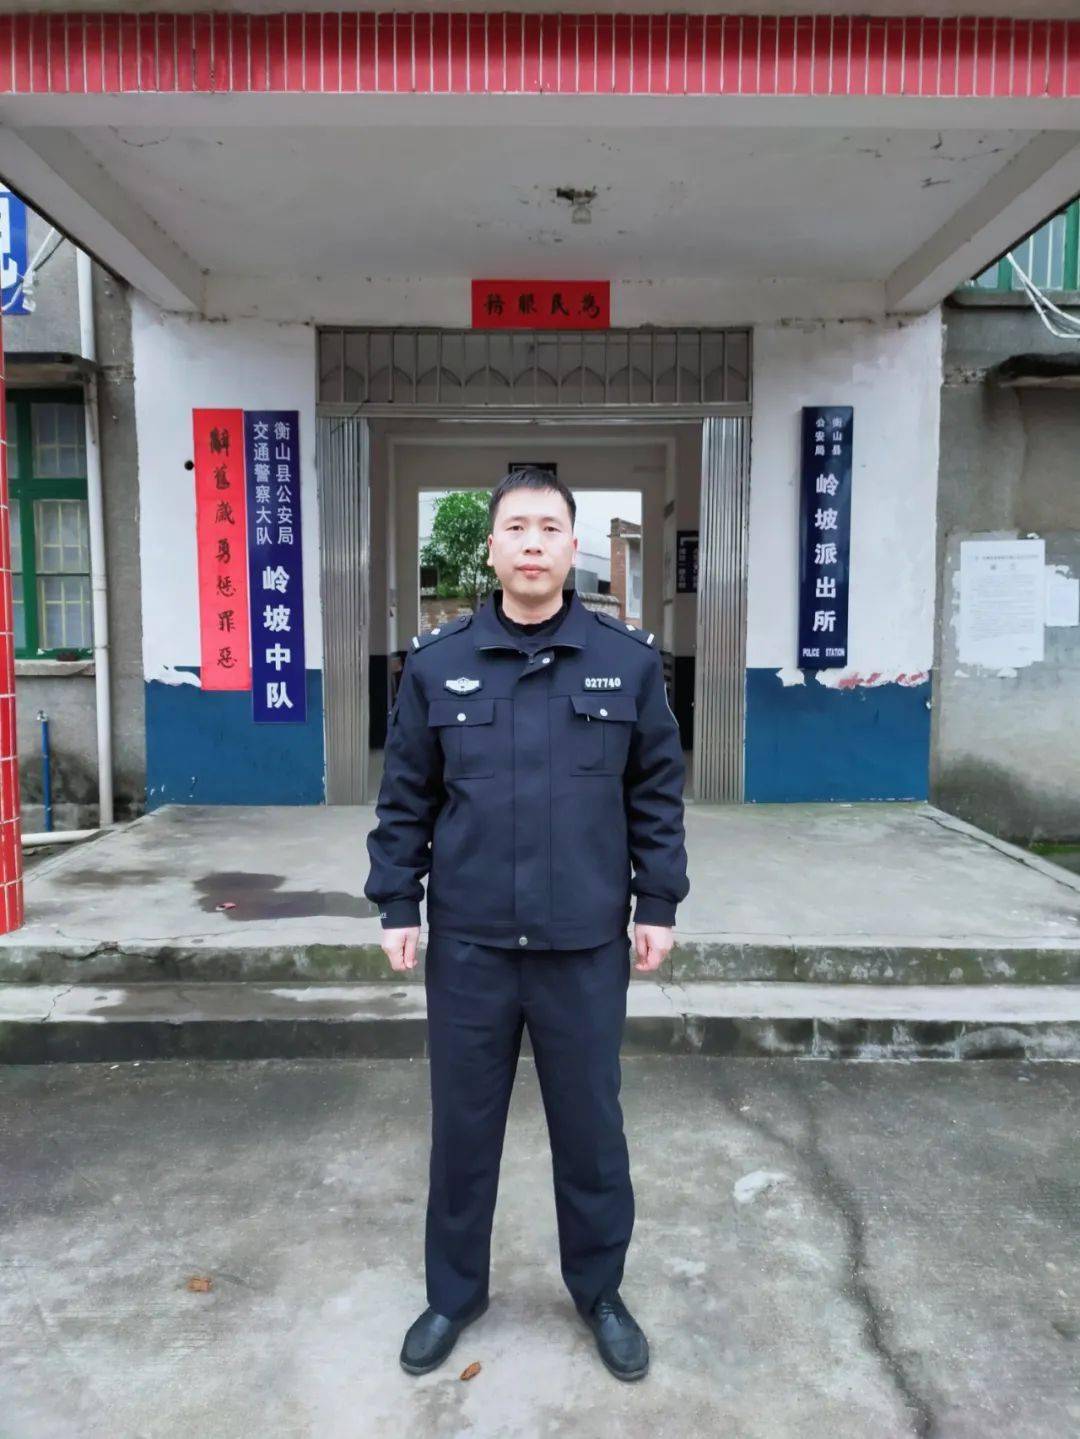 我叫邓成龙,现任职于衡山县公安局岭坡派出所,来自湖南祁阳,今年是